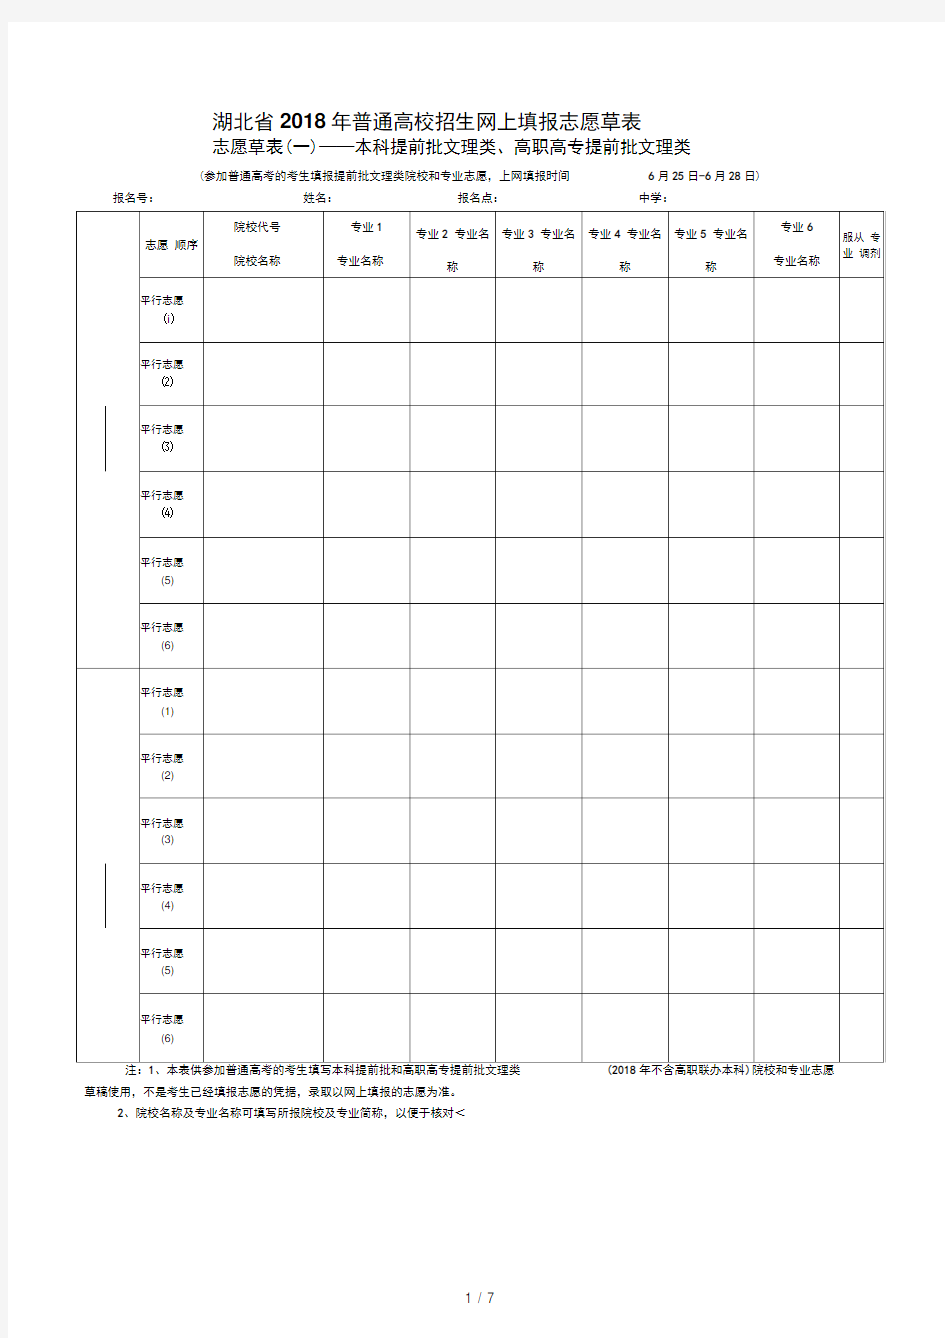 2018年湖北省高考志愿填报草表及填报说明